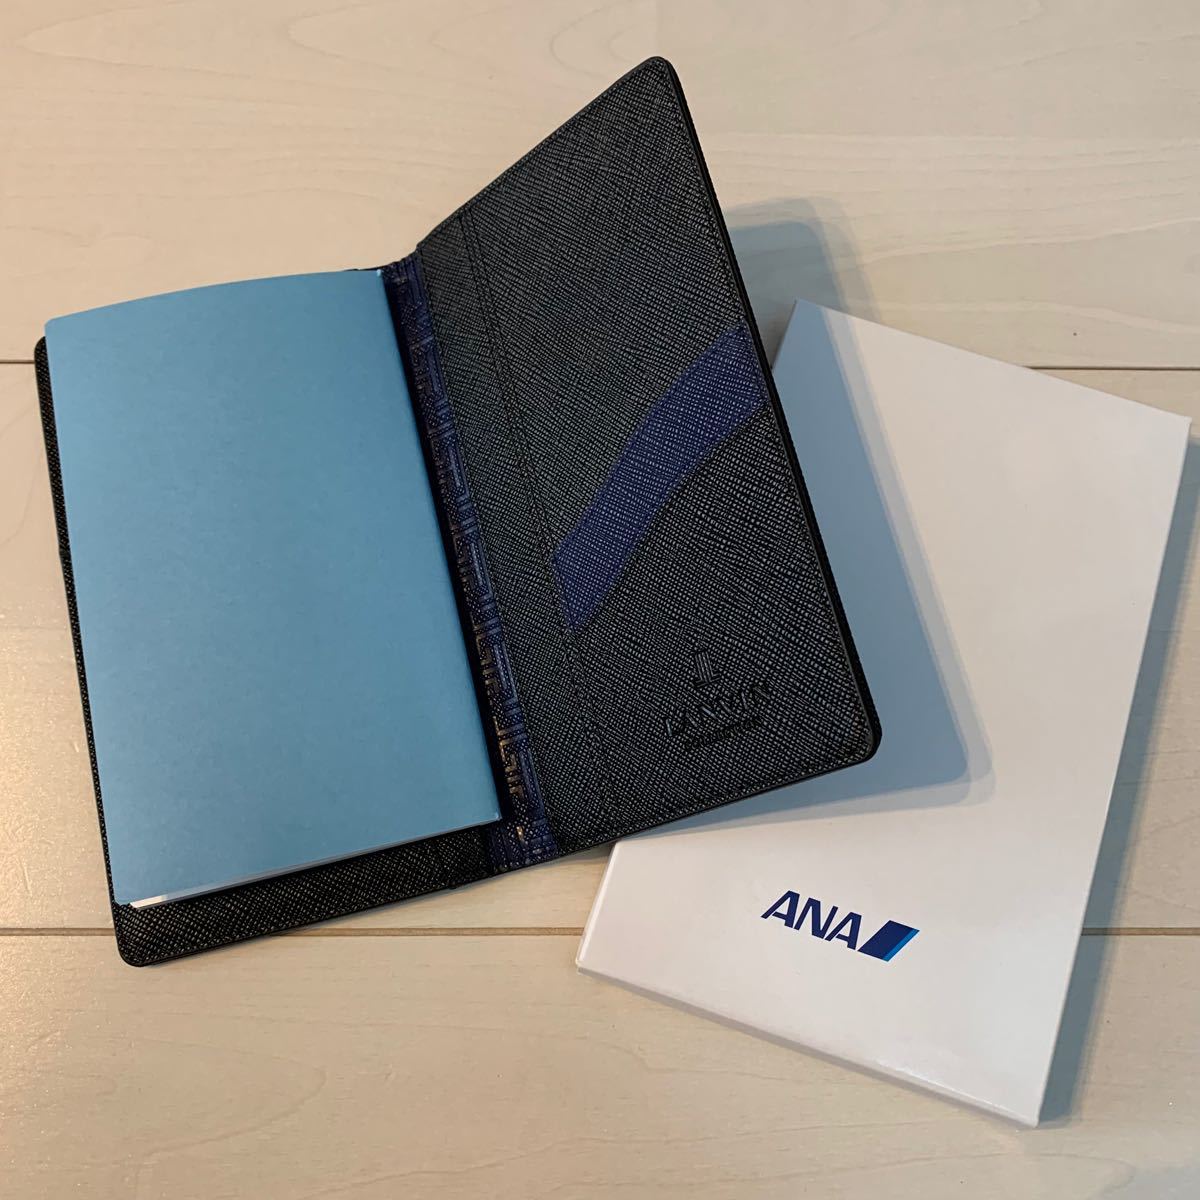 未使用 ANA 全日空 SUPER FLYERS スーパーフライヤーズ 手帳カバー カードケース 2個セット Novelty Notebook Cover  Card Case 2pcs ANA 手帳ケース